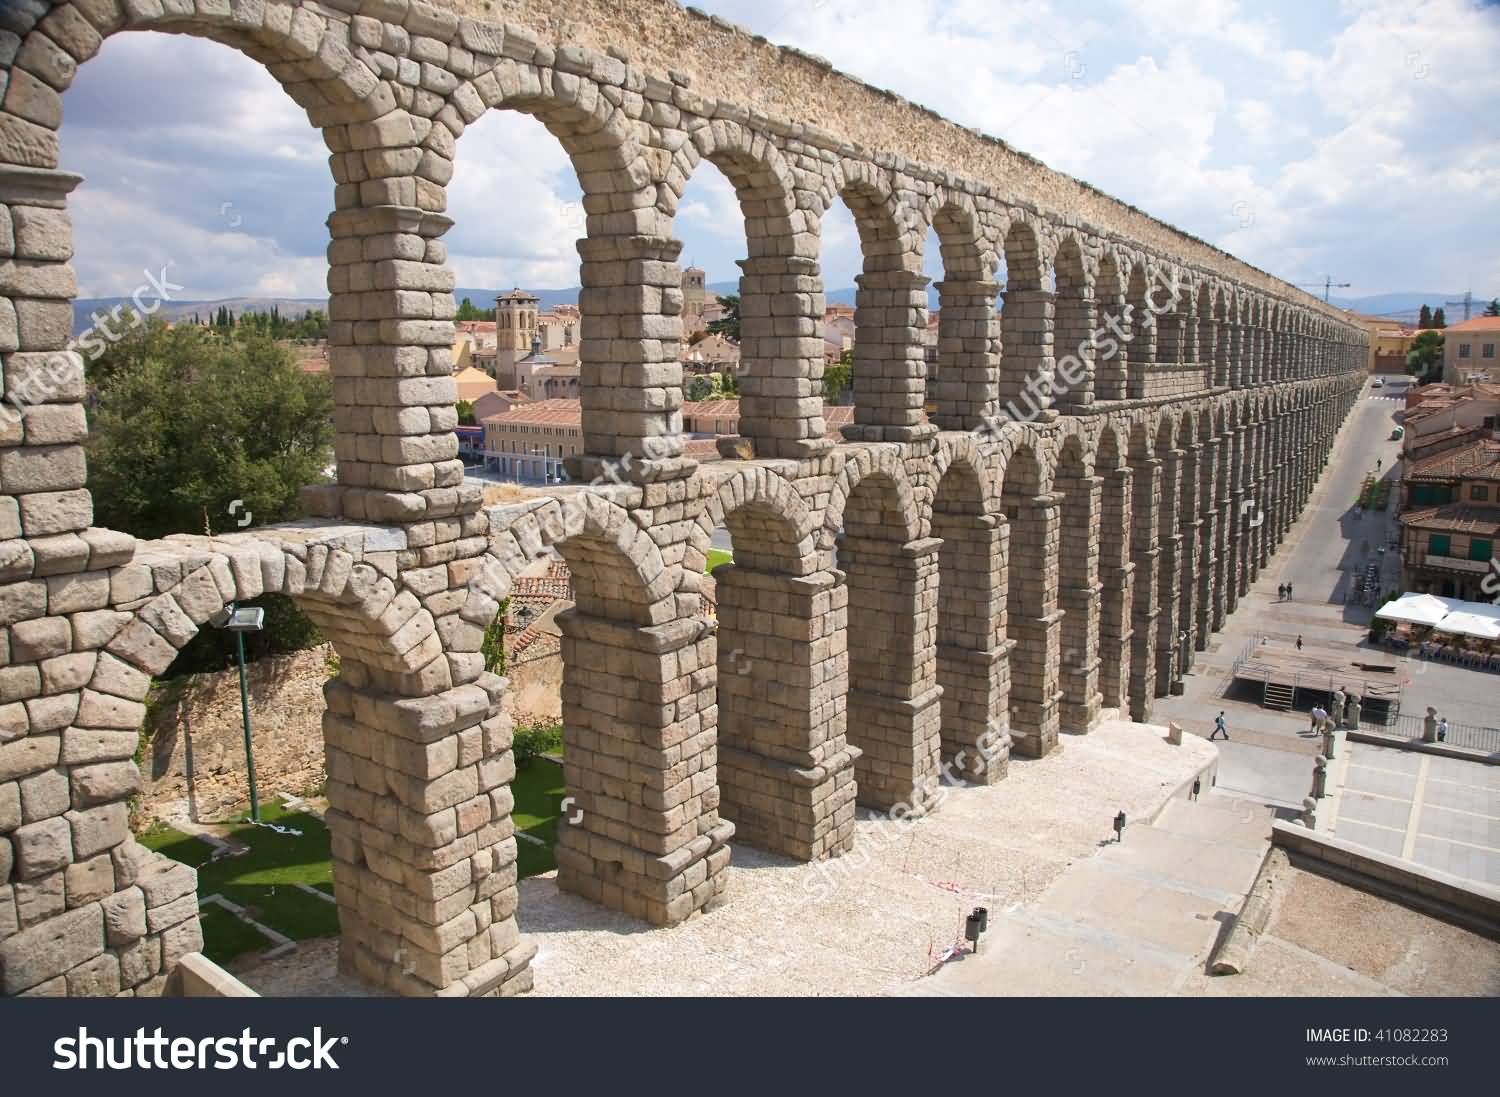 Roman Aqueduct Of Segovia City In Spain